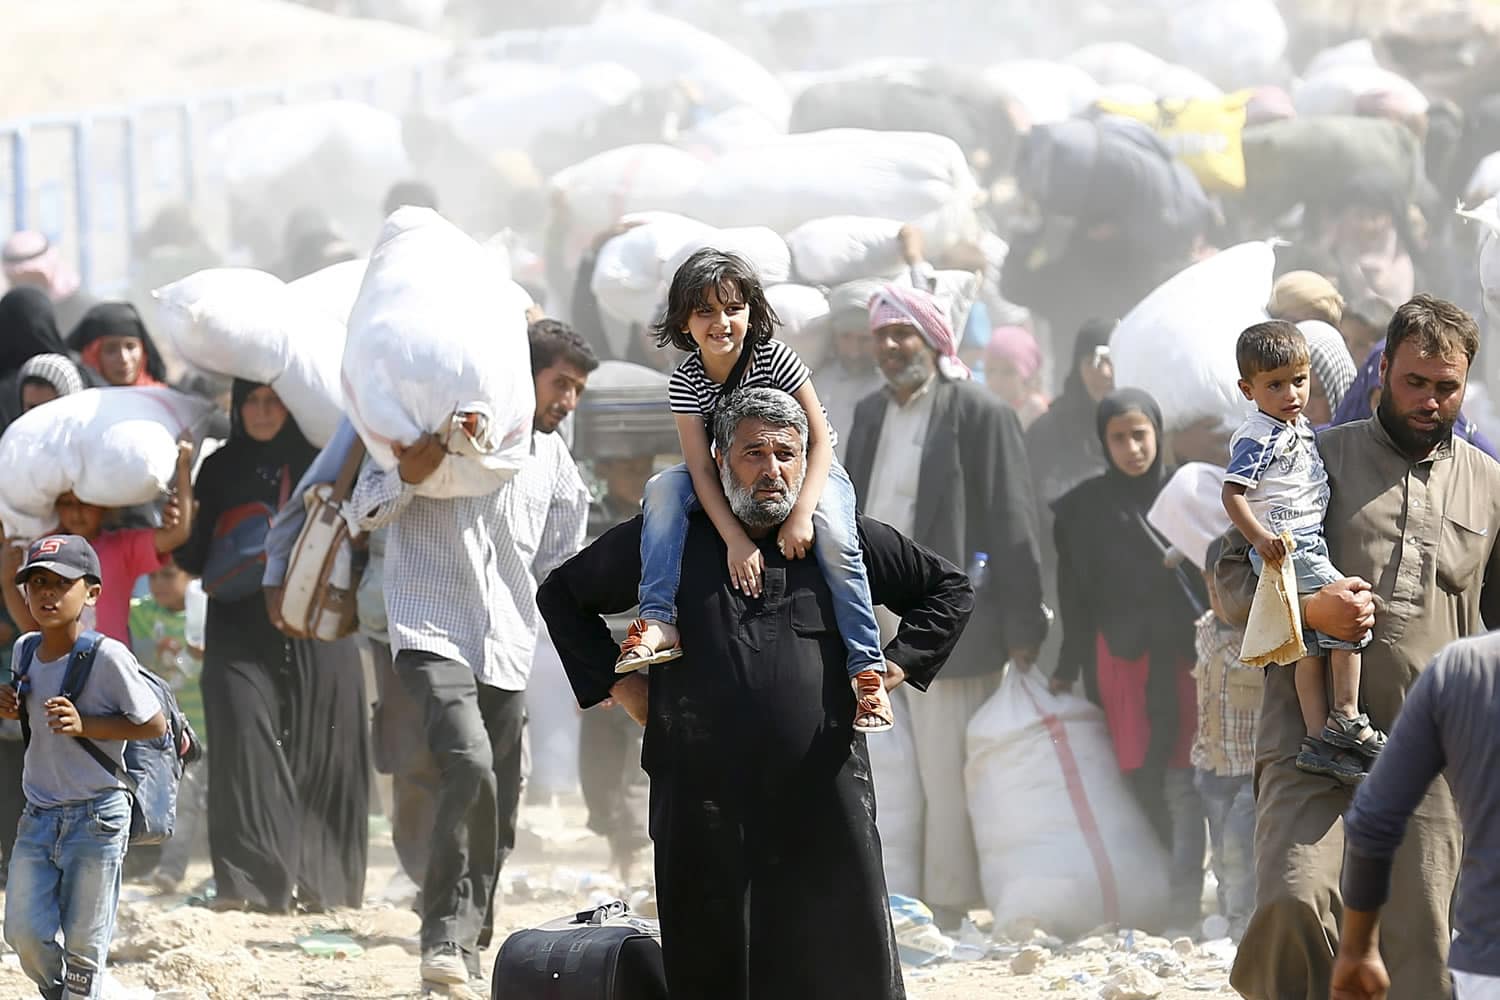 La reapertura de la frontera turca permite el éxodo a 10.000 refugiados sirios